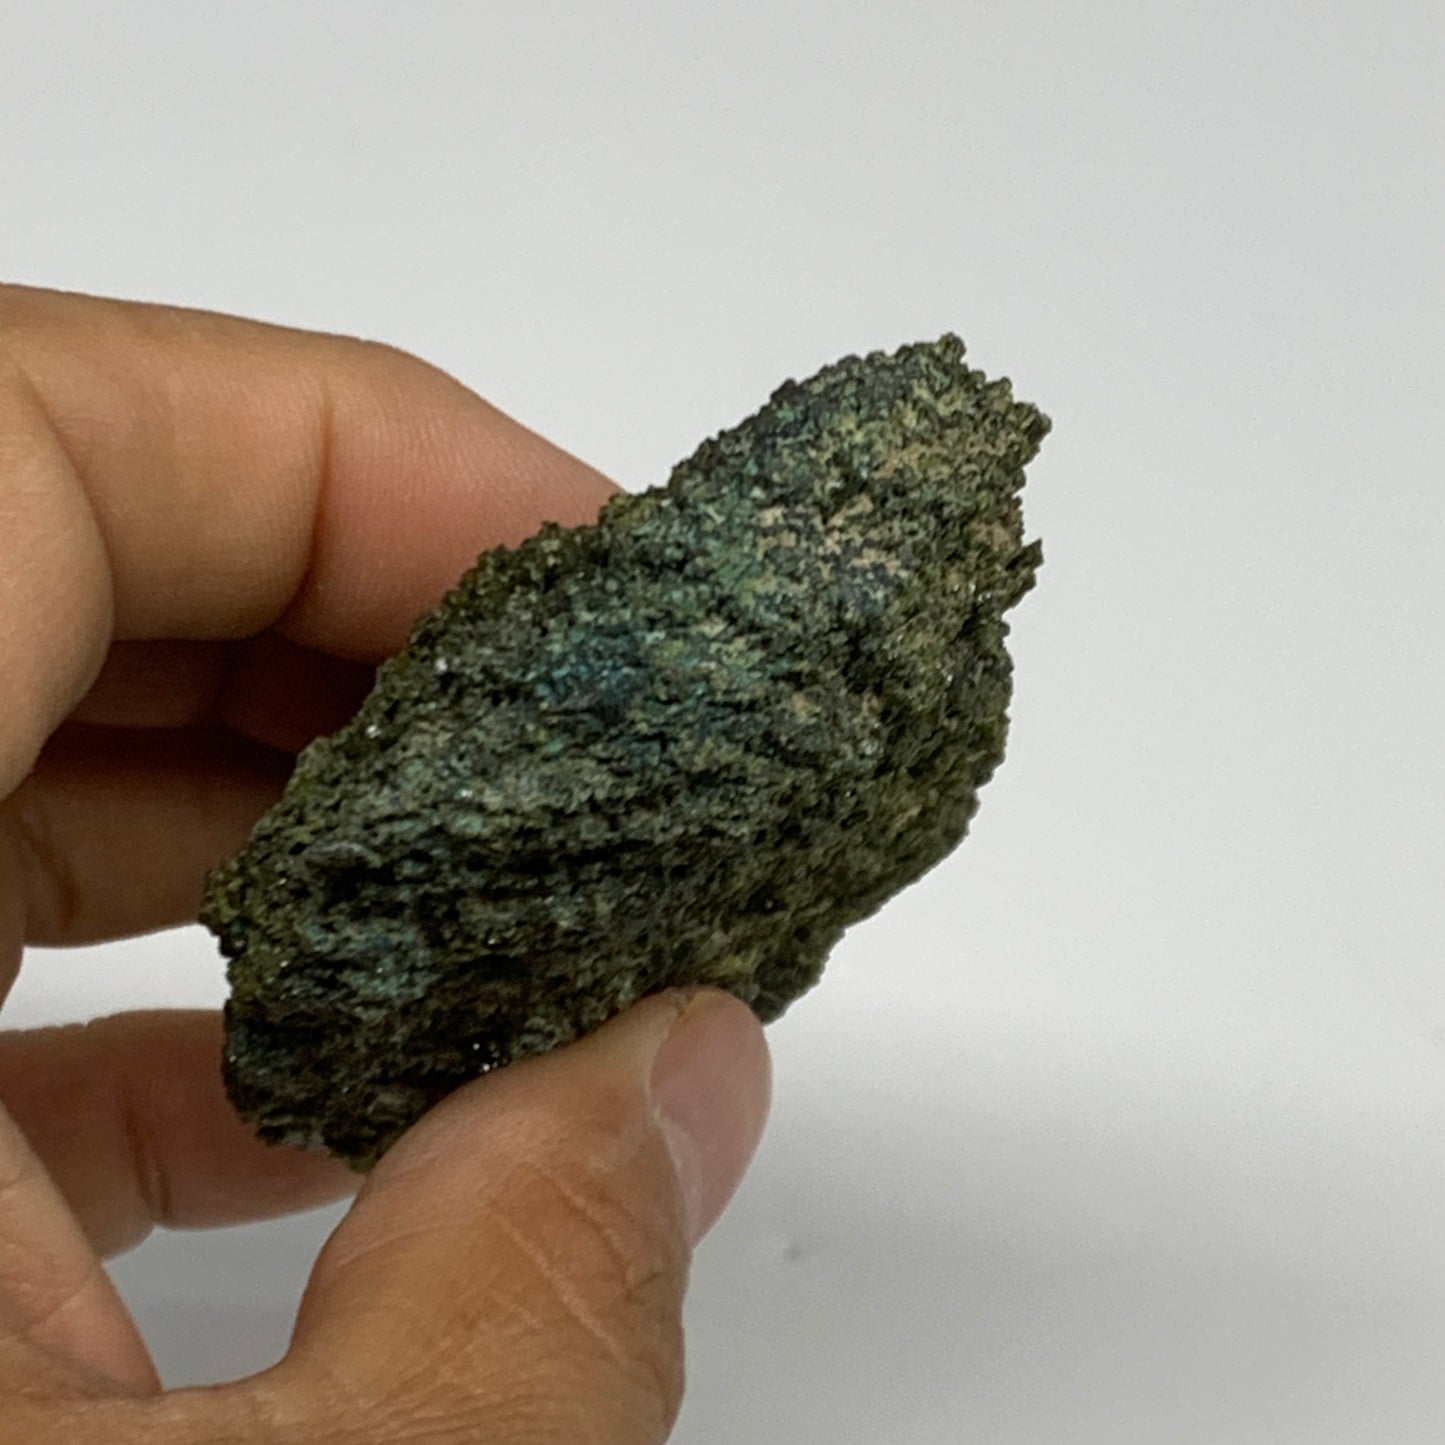 96.2g,3"x1.8"x0.7",Green Epidote Custer/Leaf Mineral Specimen @Pakistan, B27642